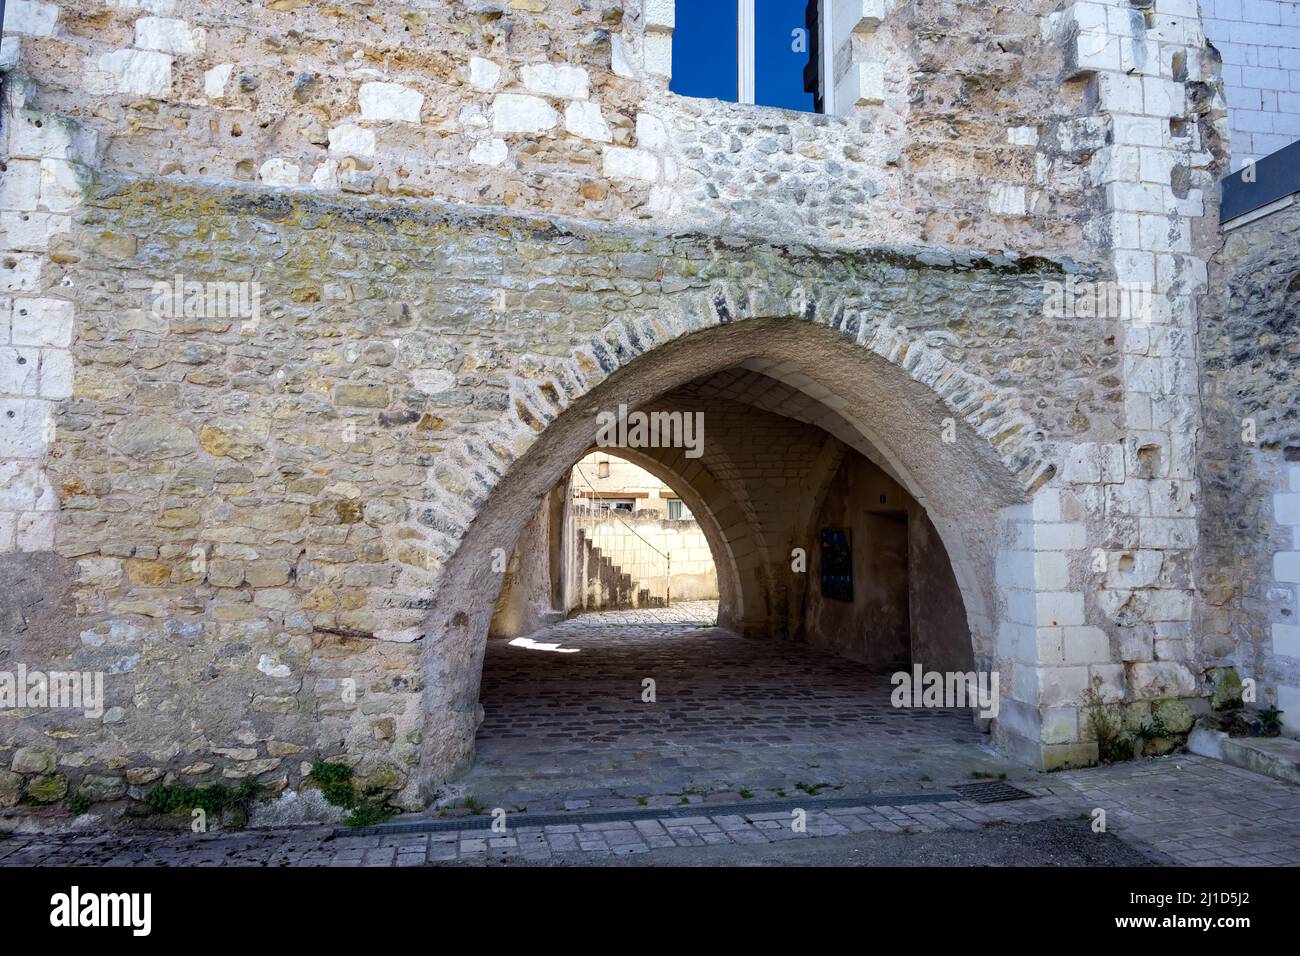 Maison des templiers (templars' house) in Beaulieu les Loches, medieval building, Touraine, France Stock Photo